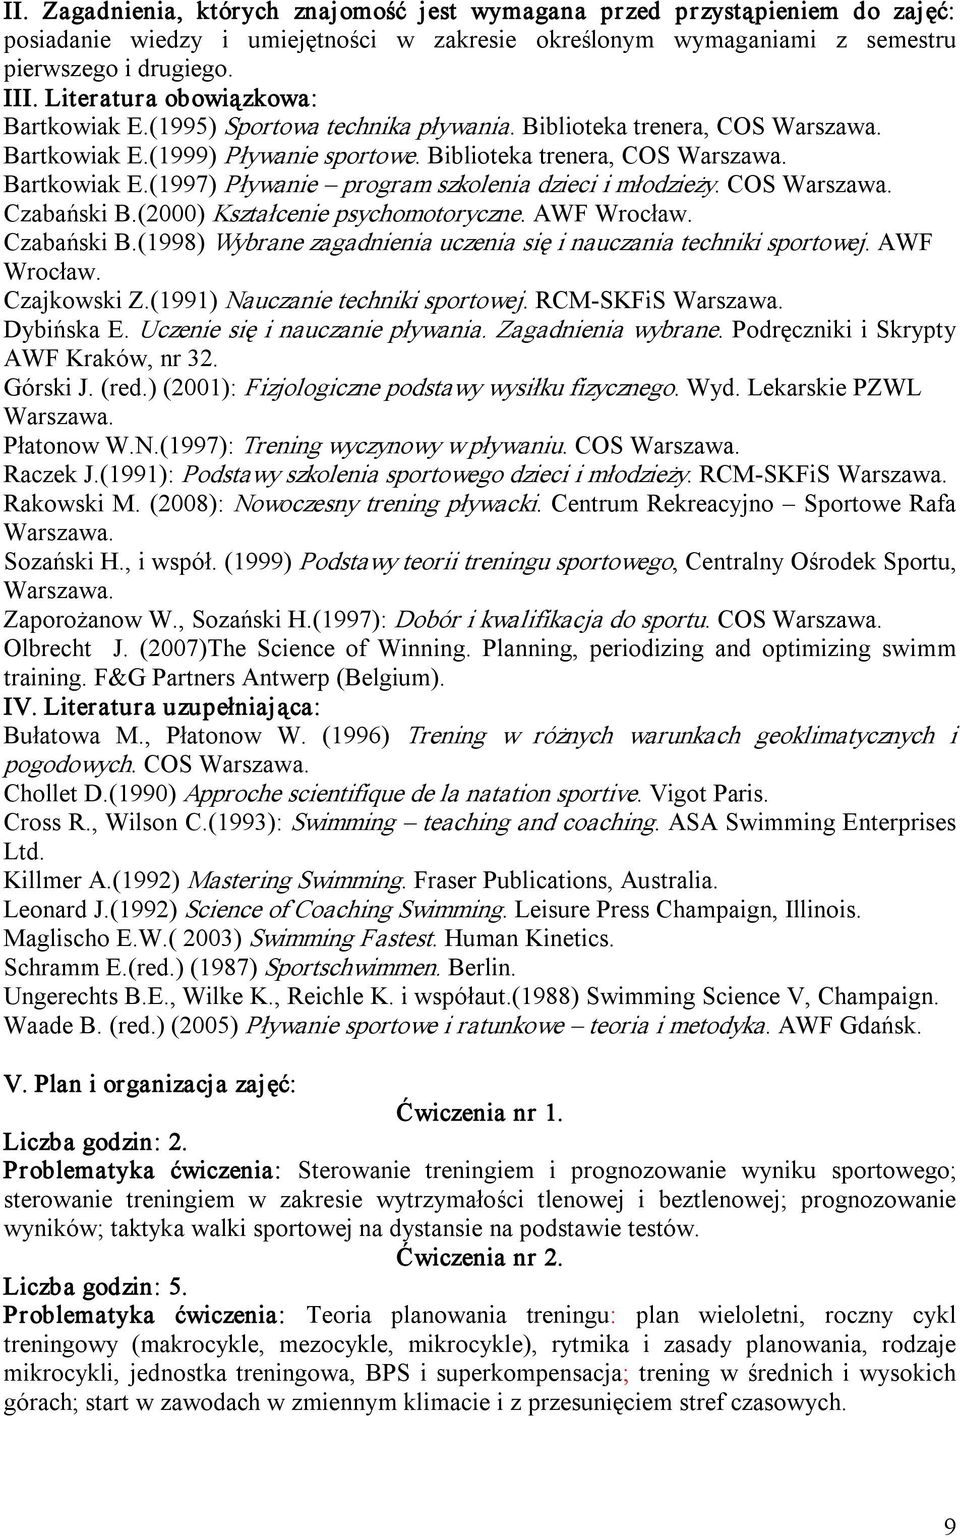 COS Czabański B.(2000) Kształcenie psychomotoryczne. AWF Wrocław. Czabański B.(1998) Wybrane zagadnienia uczenia się i nauczania techniki sportowej. AWF Wrocław. Czajkowski Z.